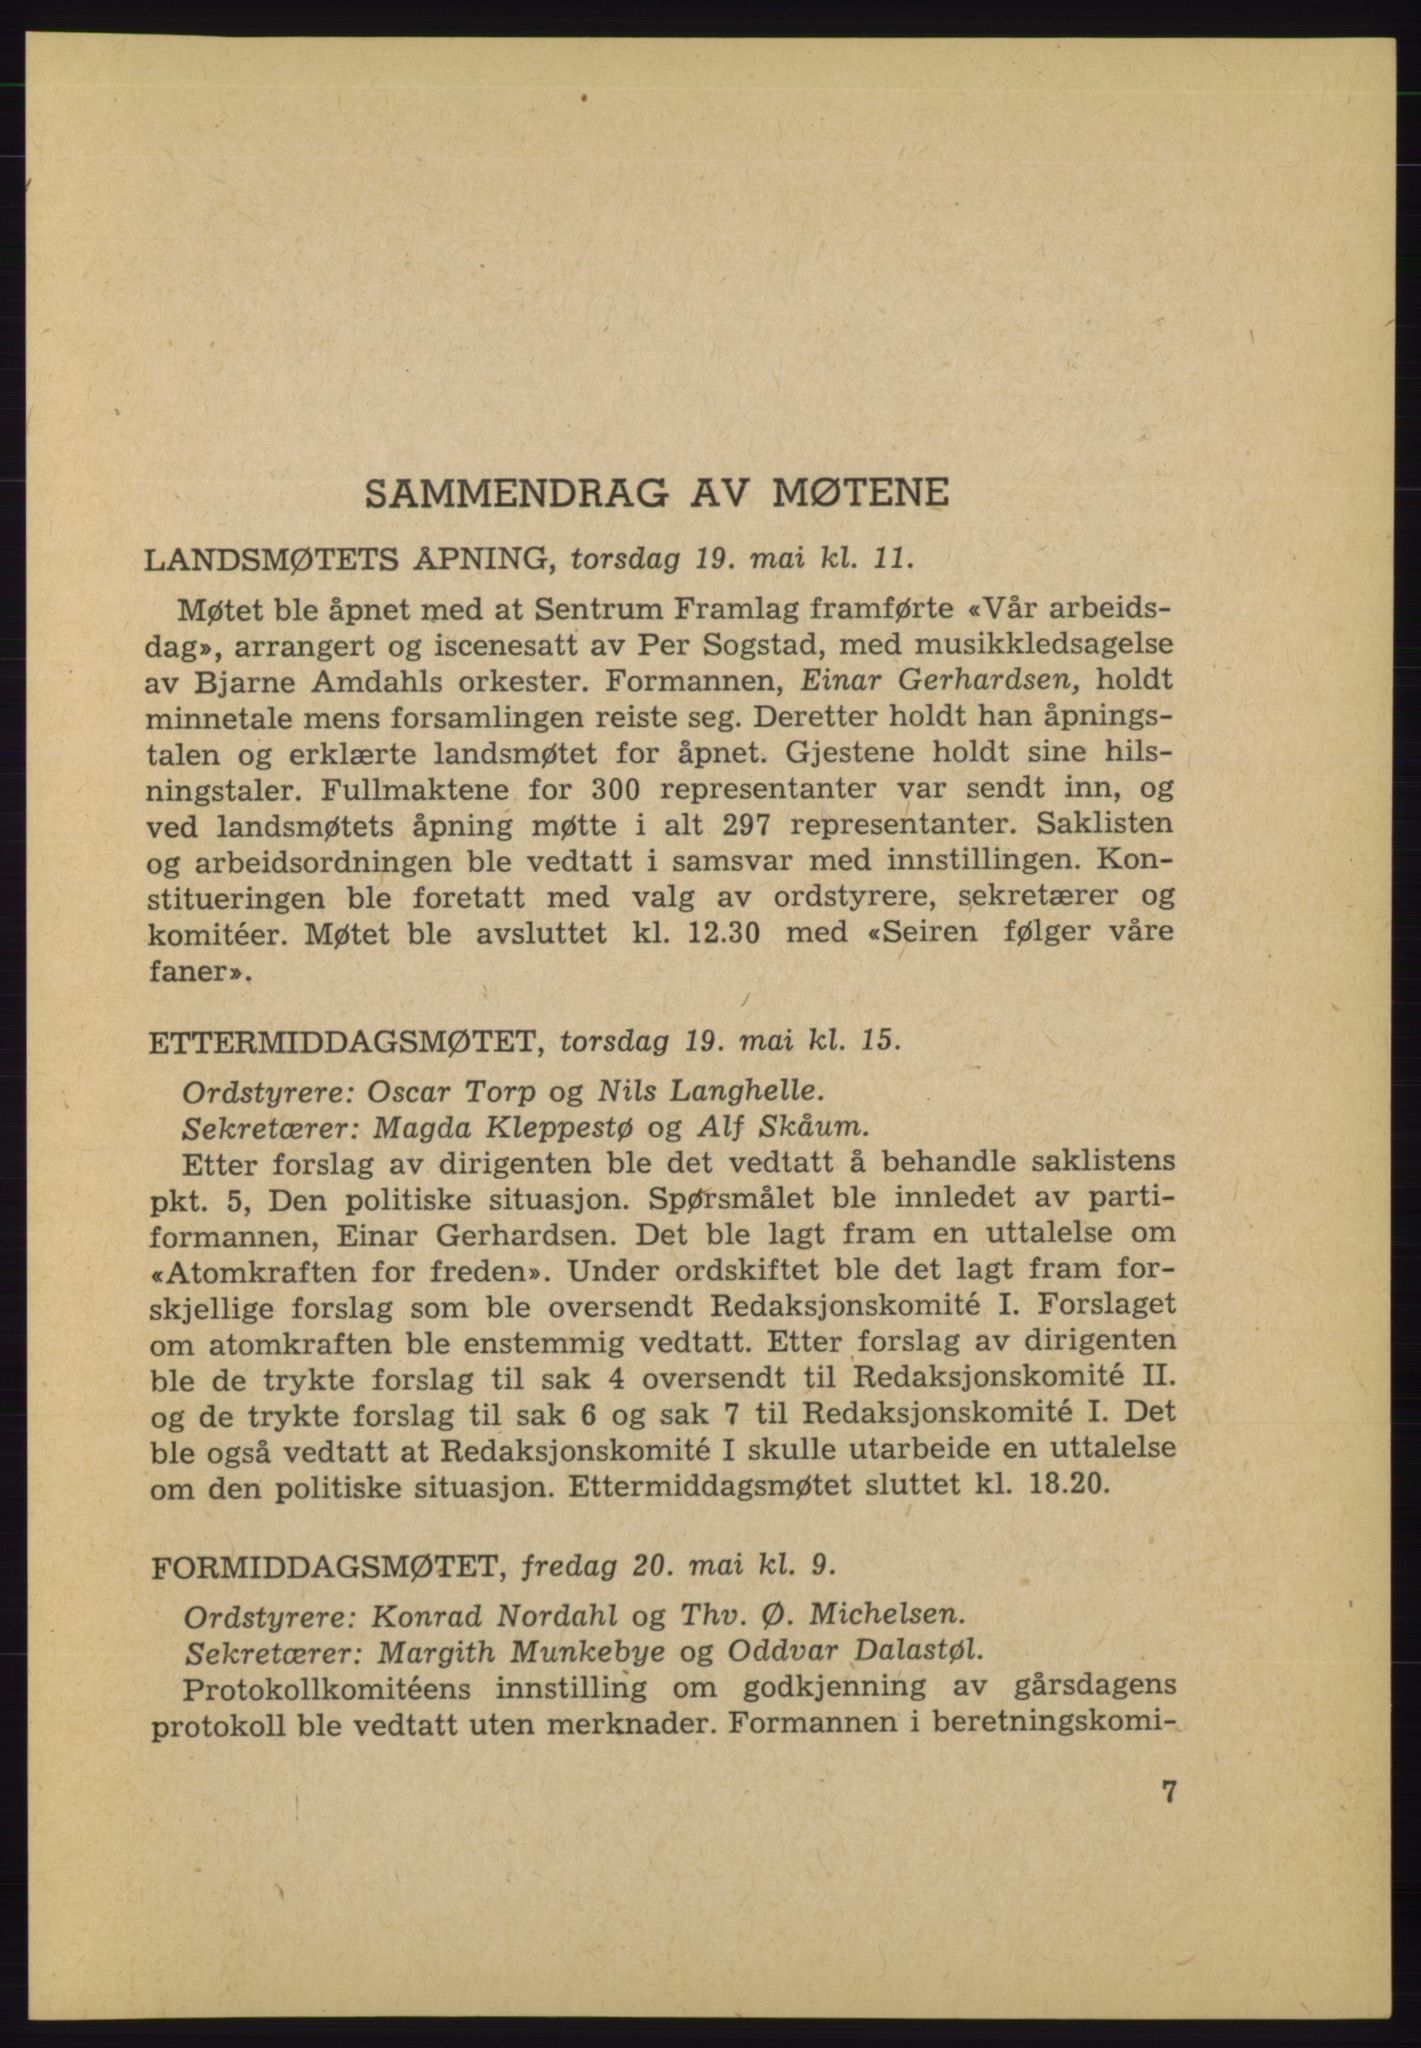 Det norske Arbeiderparti - publikasjoner, AAB/-/-/-: Protokoll over forhandlingene på det 35. ordinære landsmøte 19.-21. mars 1955 i Oslo, 1955, s. 7